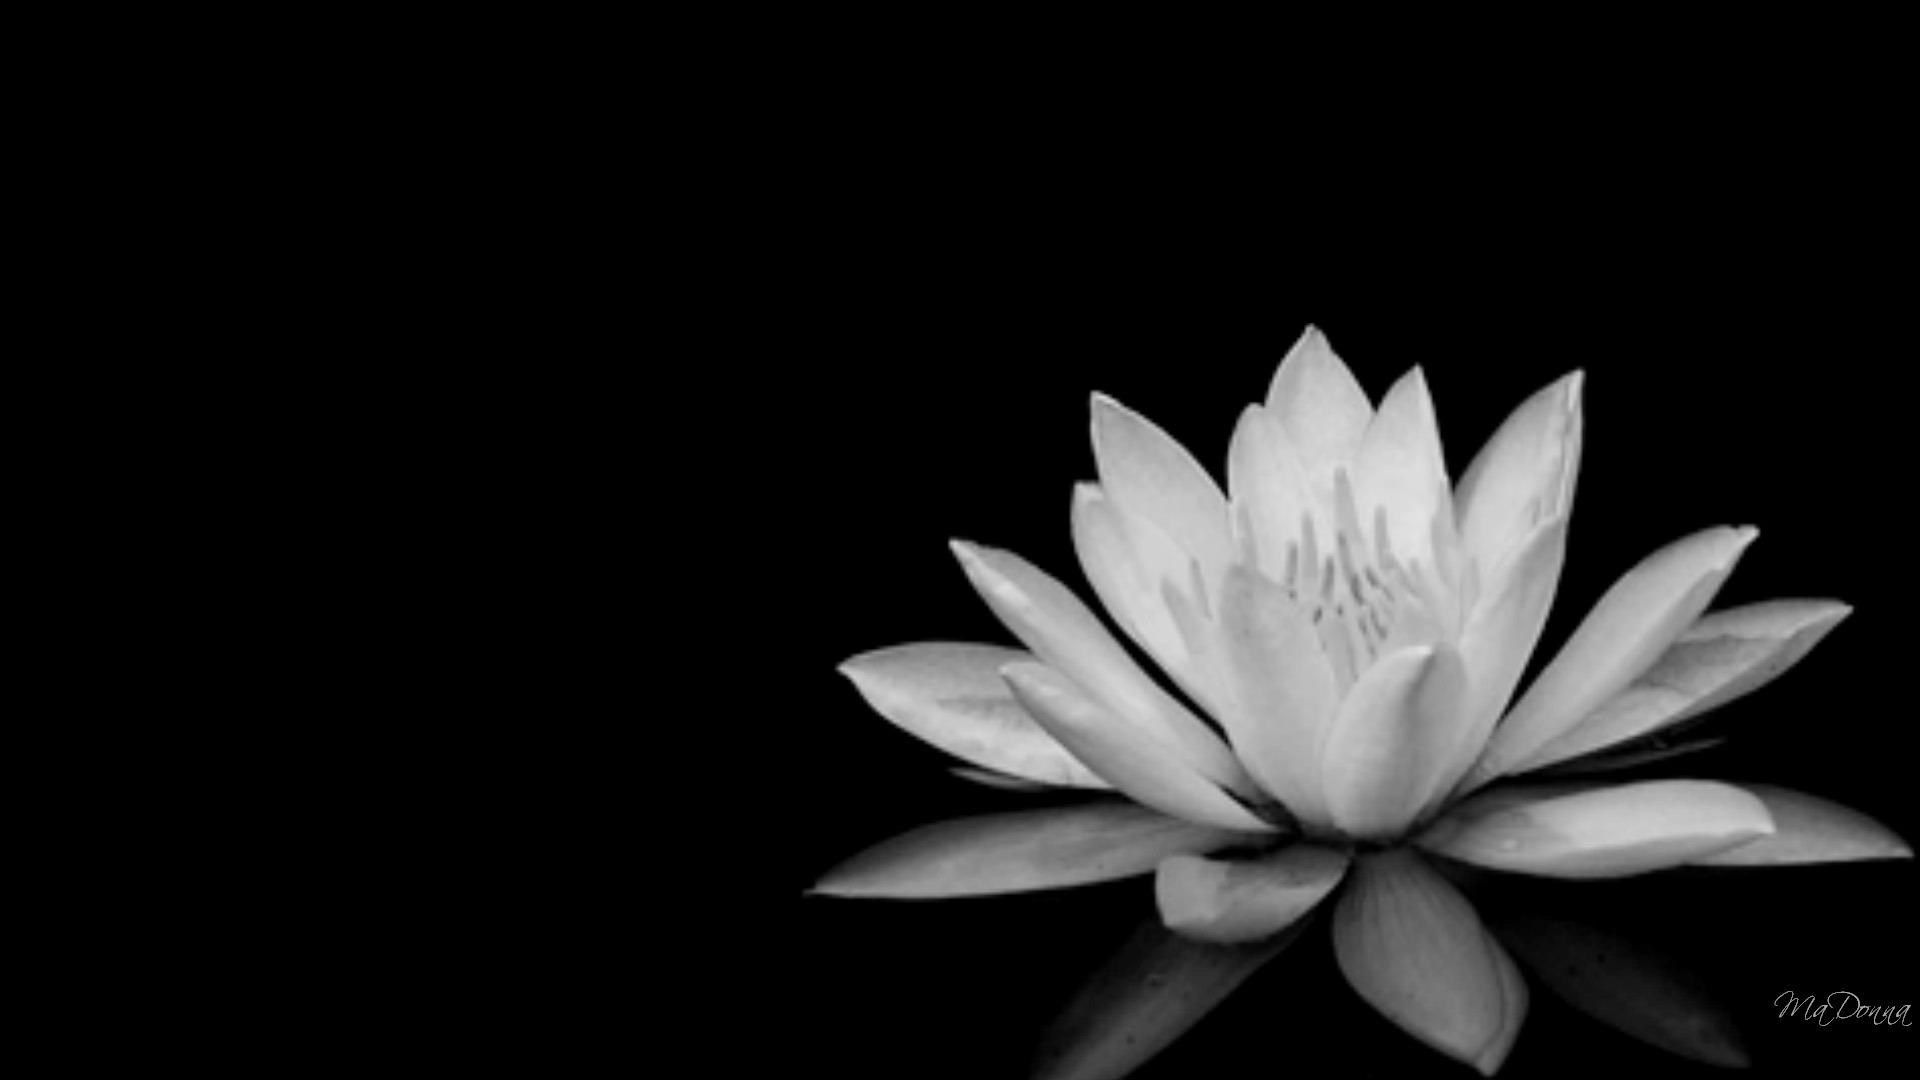 Black and White Lotus Desktop Wallpaper Free Black and White Lotus Desktop Background